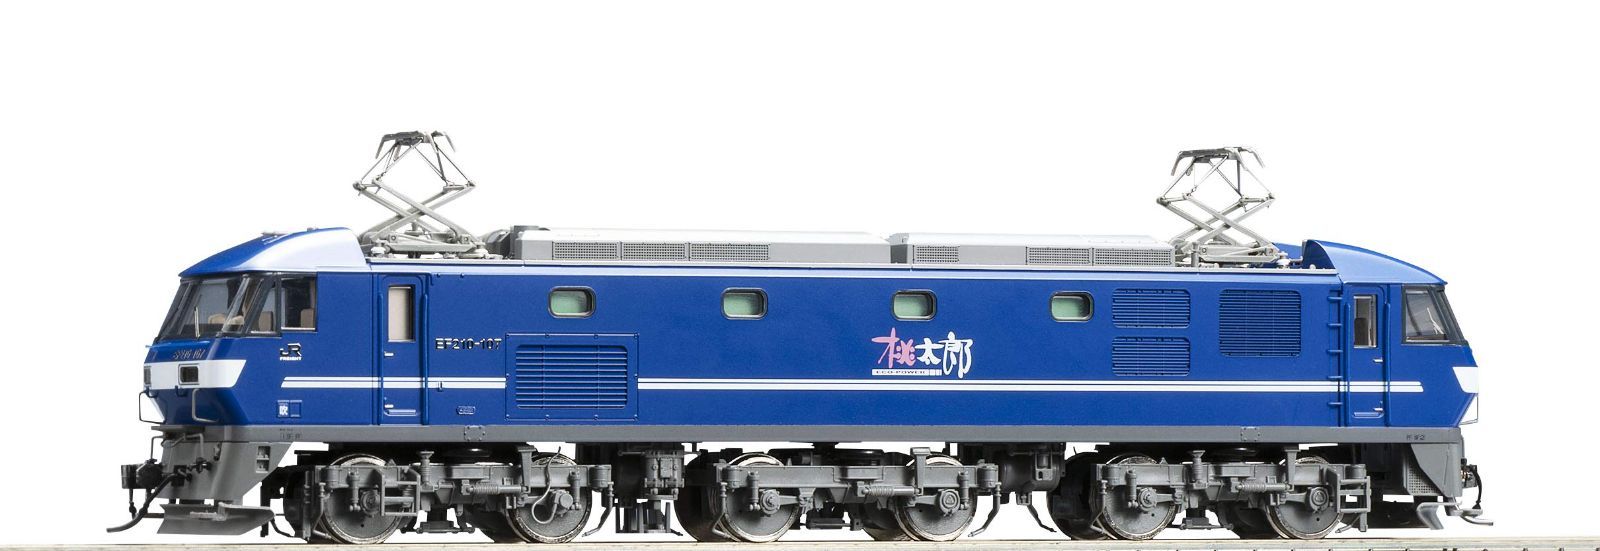 【日本一掃】TOMIX HO-2005 EF210-100電気機関車 新塗装 機関車